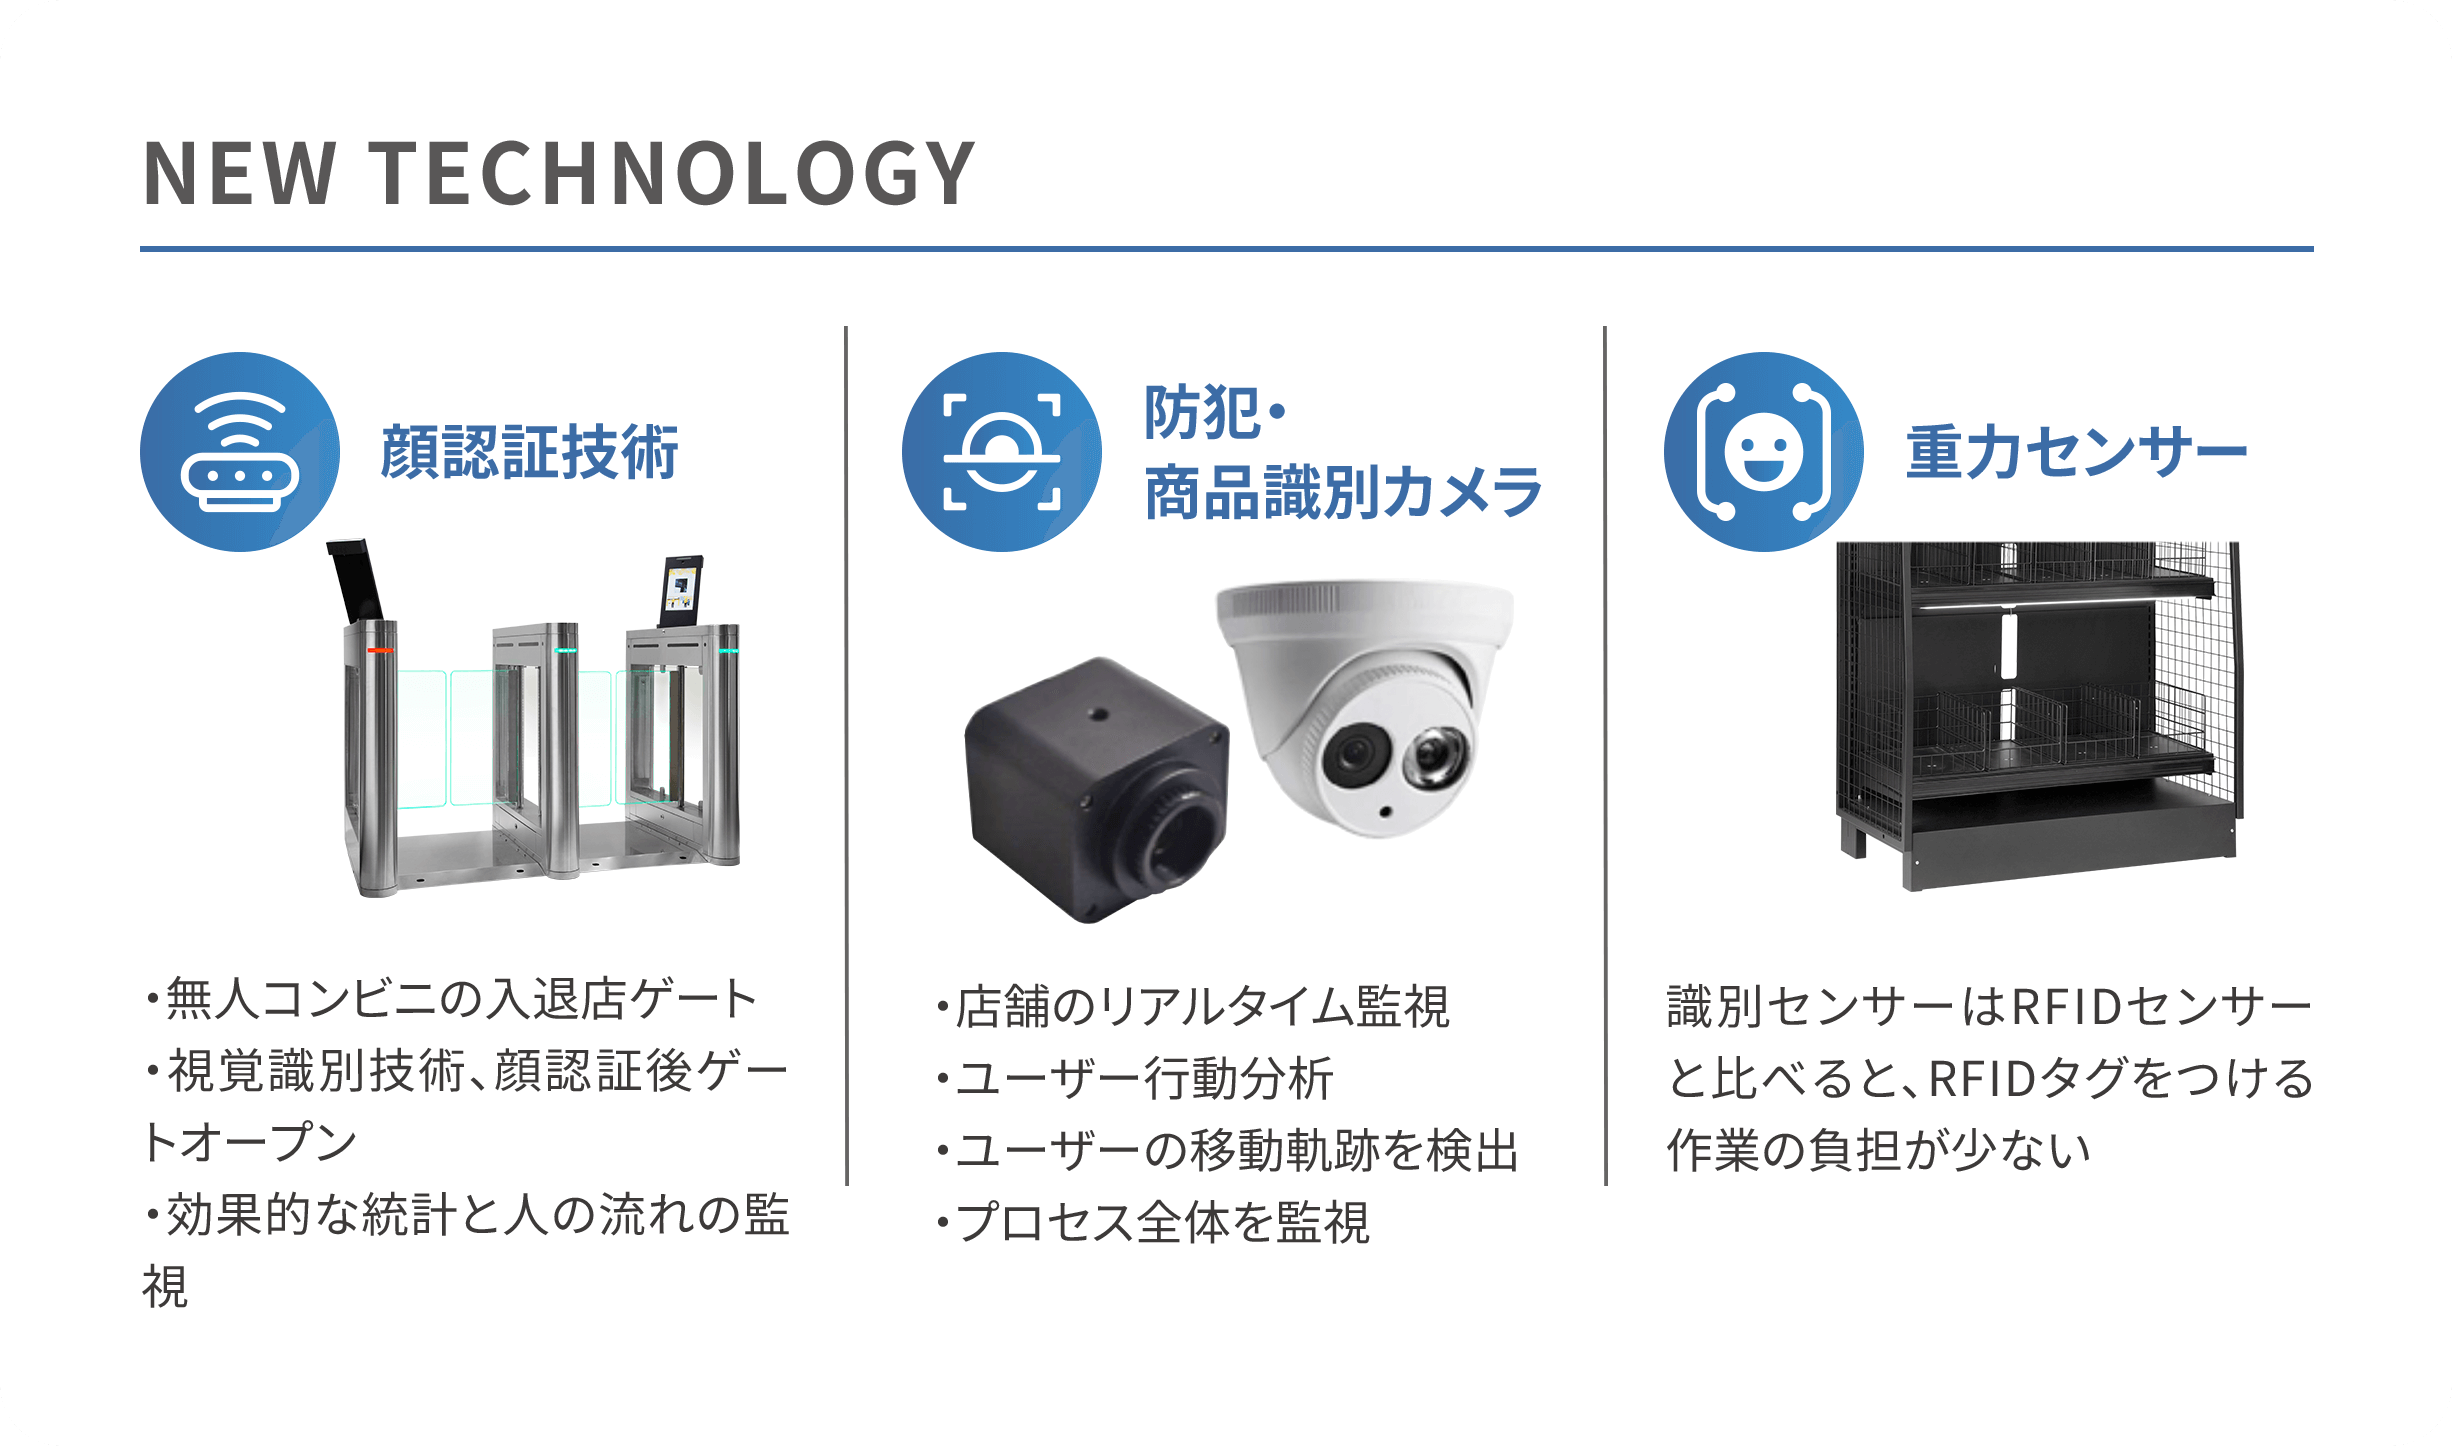 NEW TECHNOLOGY：顔認証技術、防犯・商品識別カメラ、重力センサー